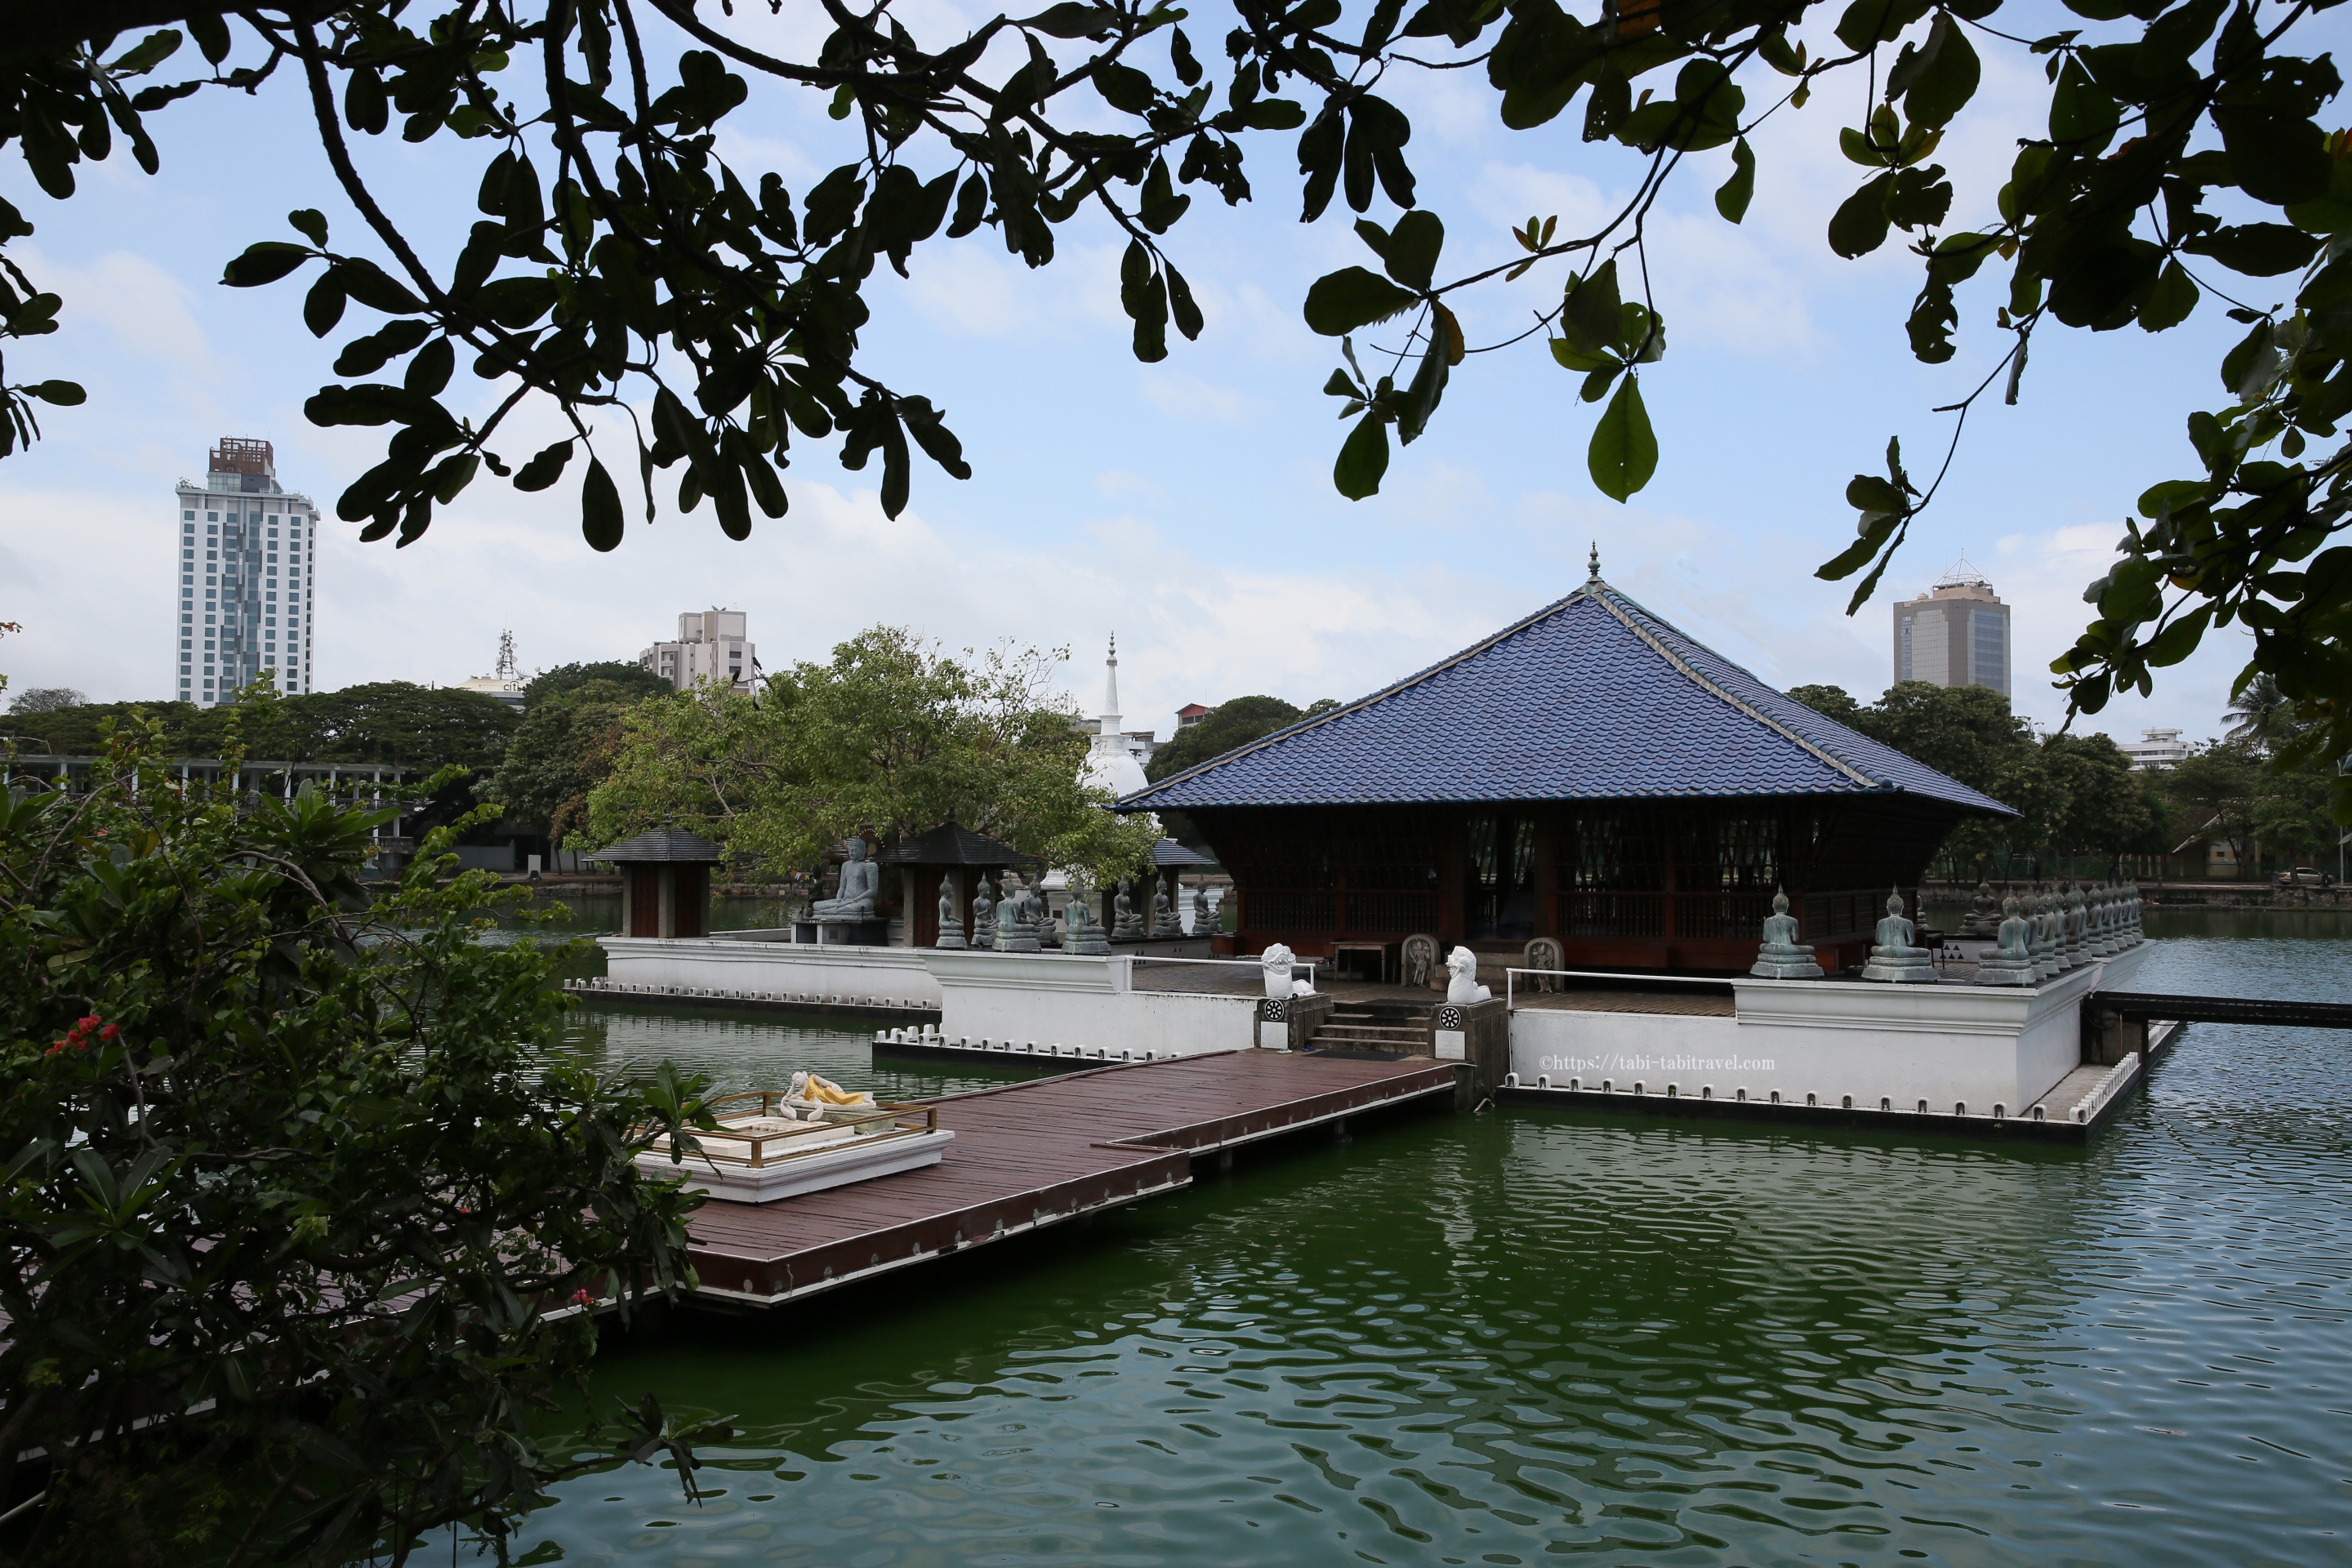 シーママラカヤ寺院の外観画像